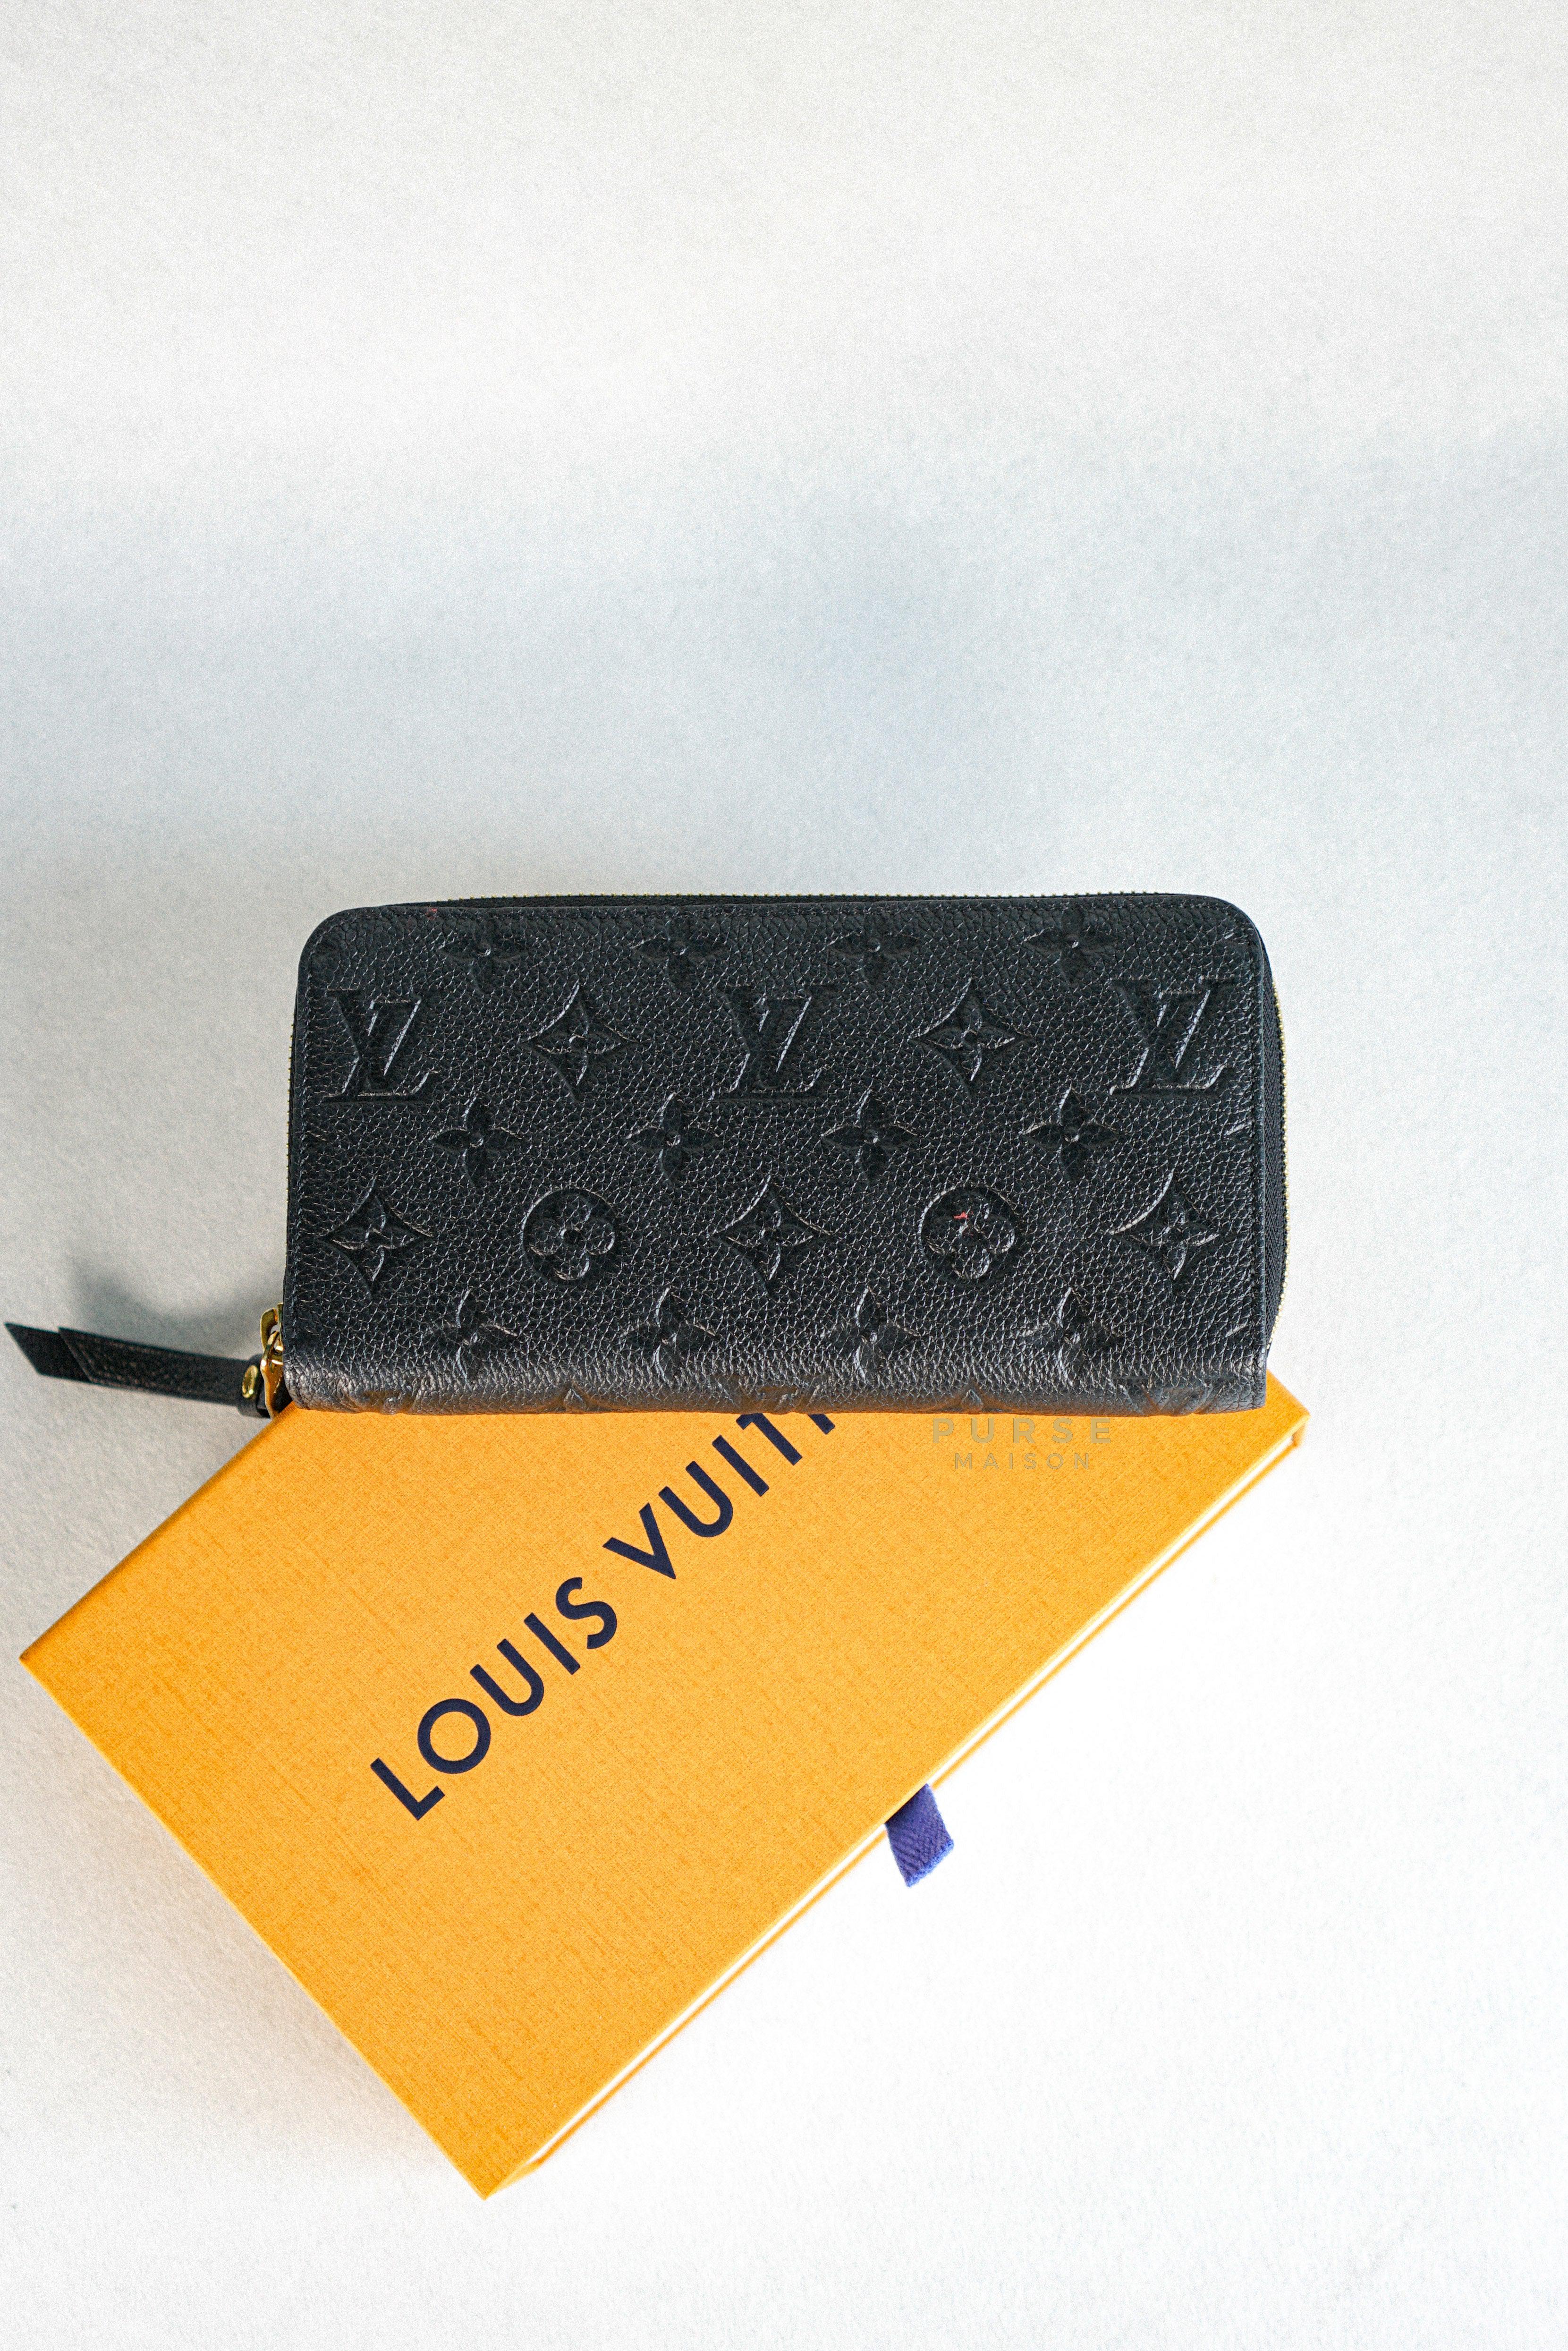 Louis Vuitton Zippy Long Wallet in Noir Monogram Empreinte | Purse Maison Luxury Bags Shop